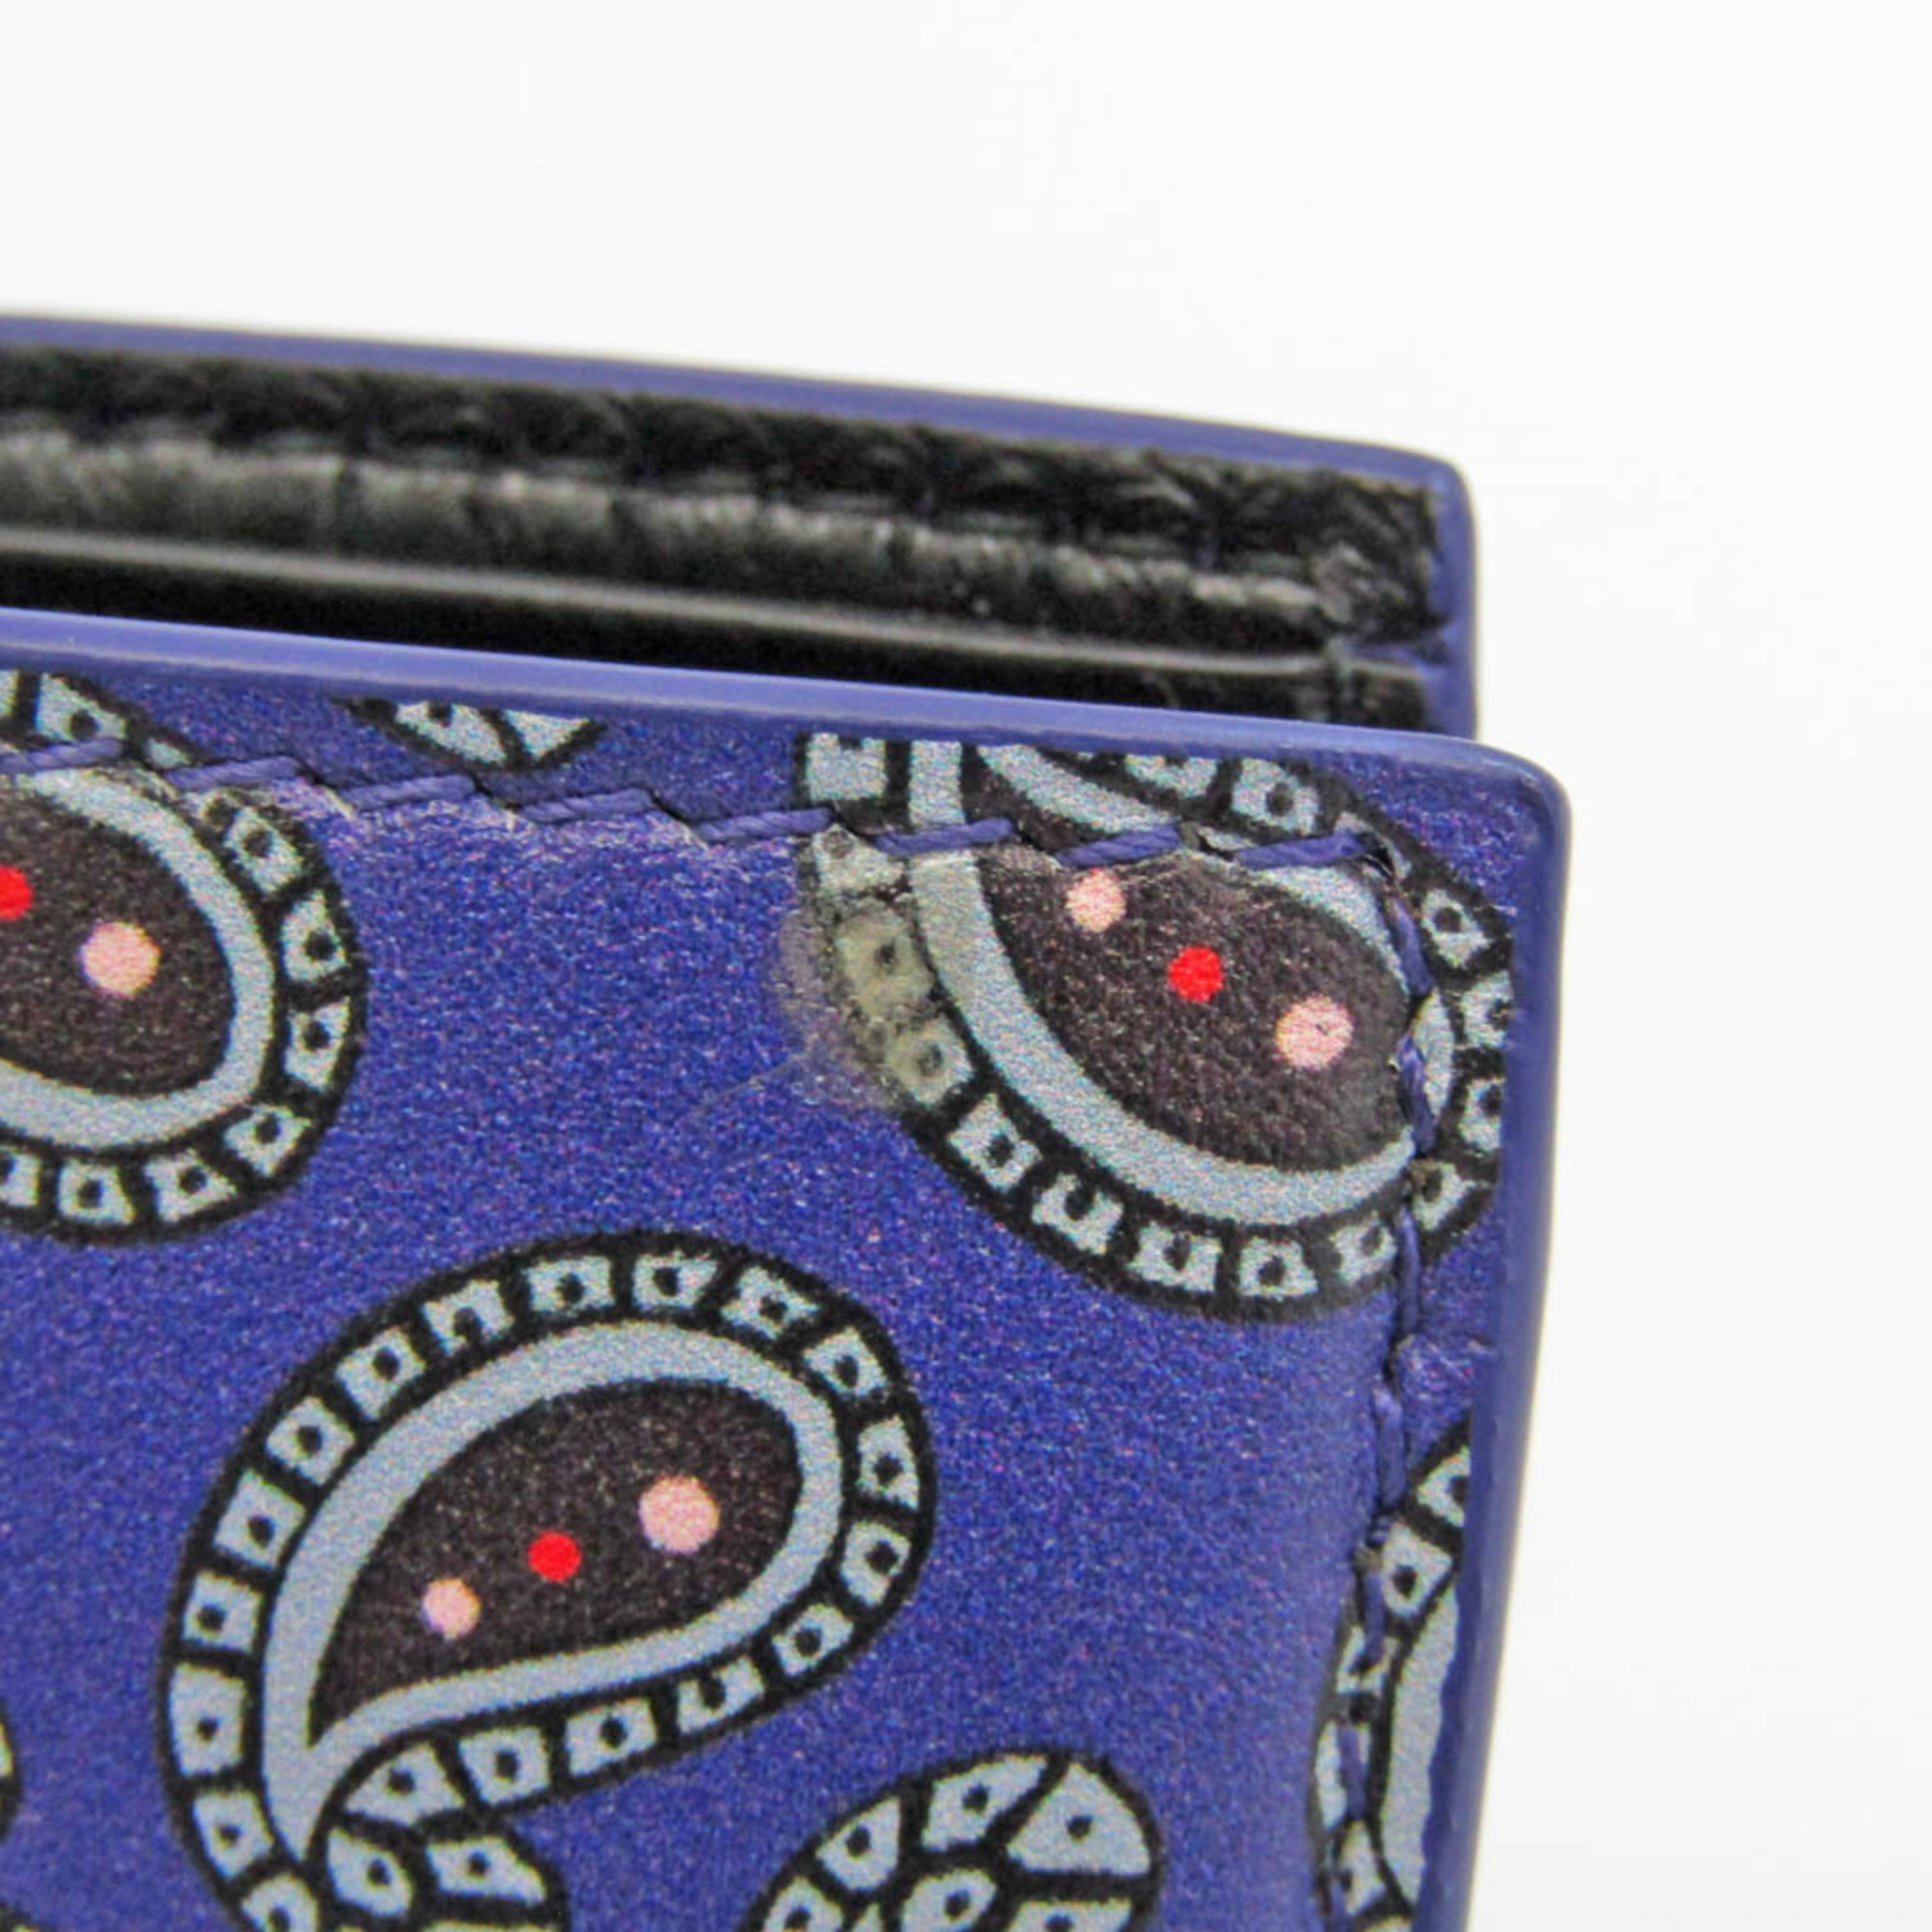 Balenciaga Square Wallet Paisley Pattern 594315 Men,Women Leather Wallet (bi-fold) Black,Purple